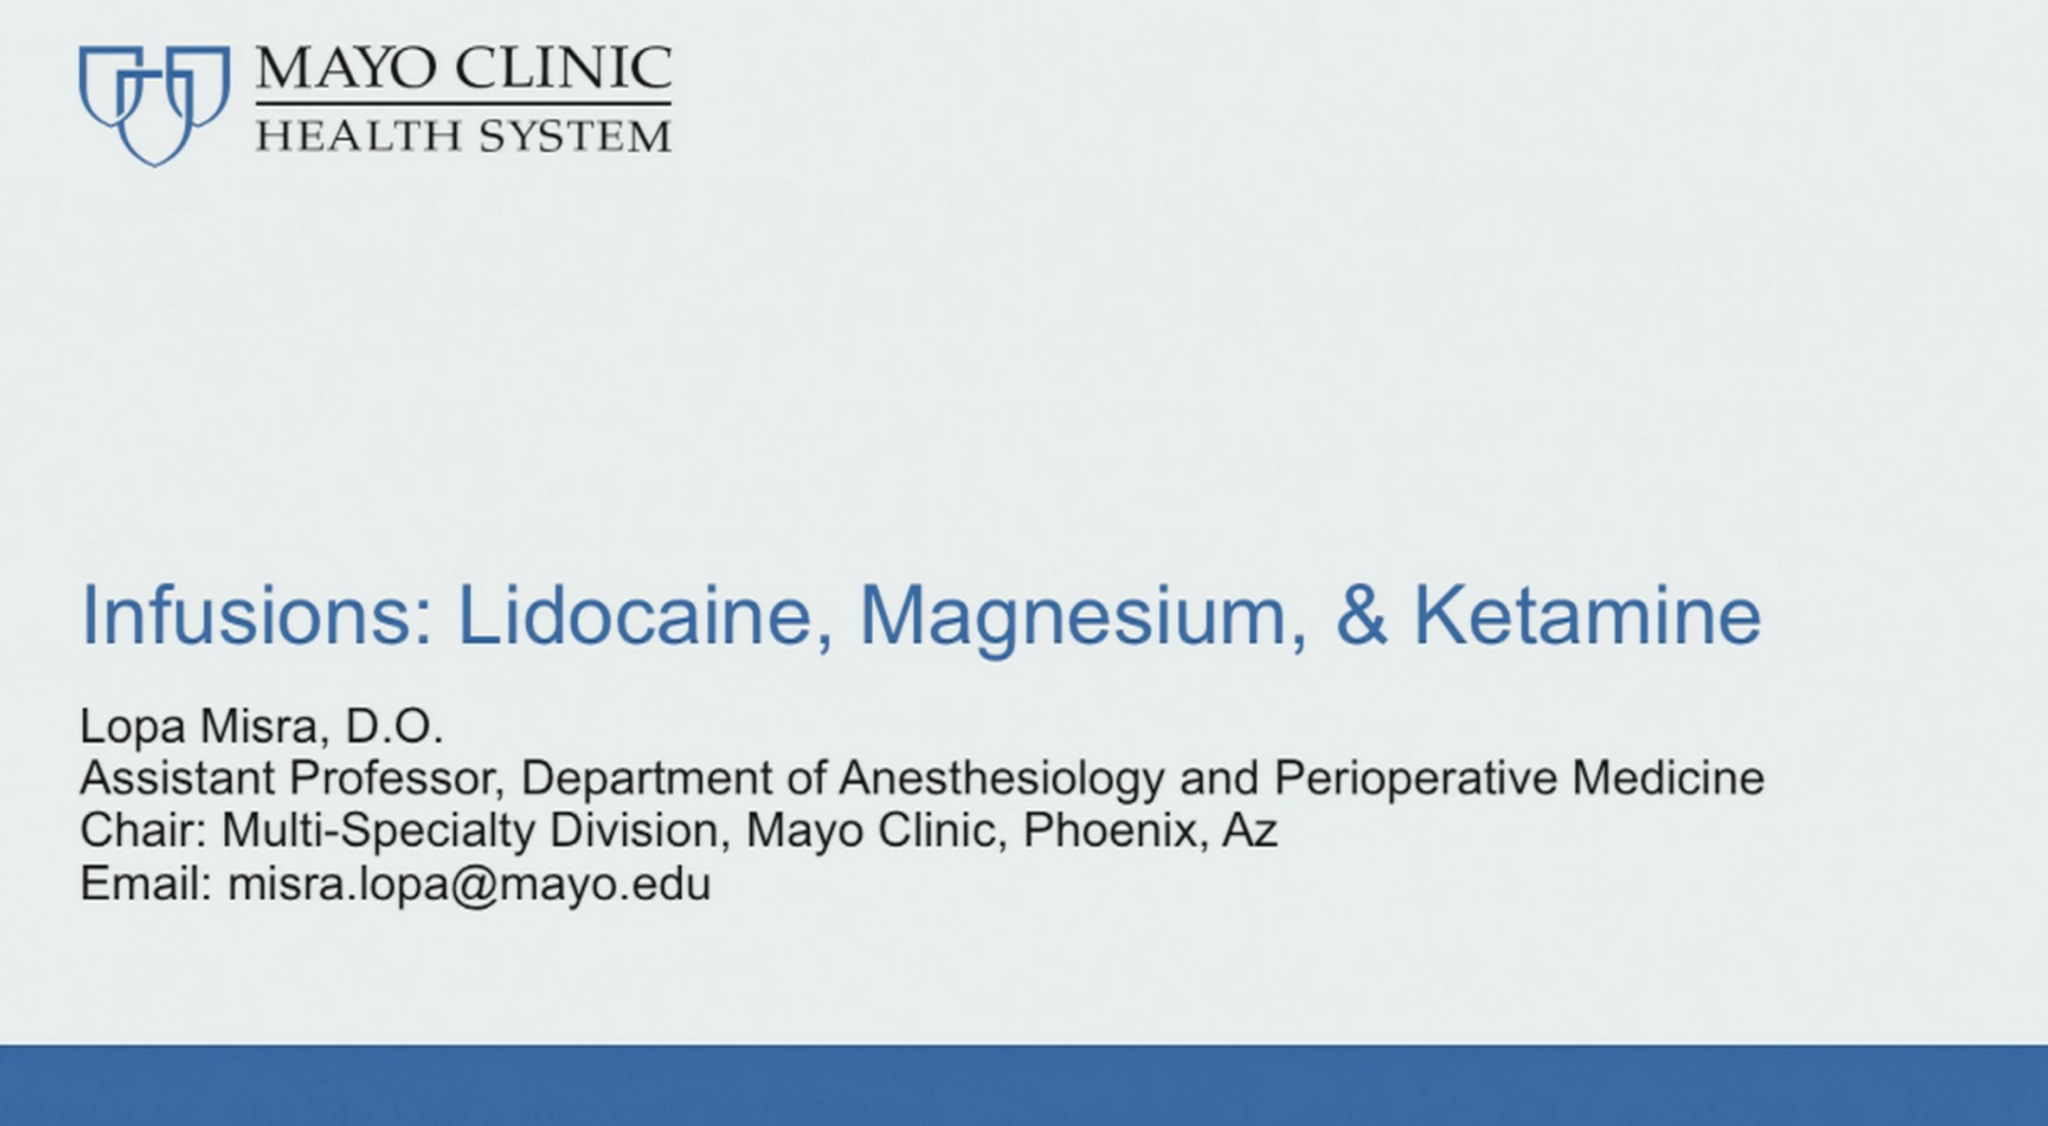 Infusions - Ketamine, Lidocaine, Magnesium L Misra